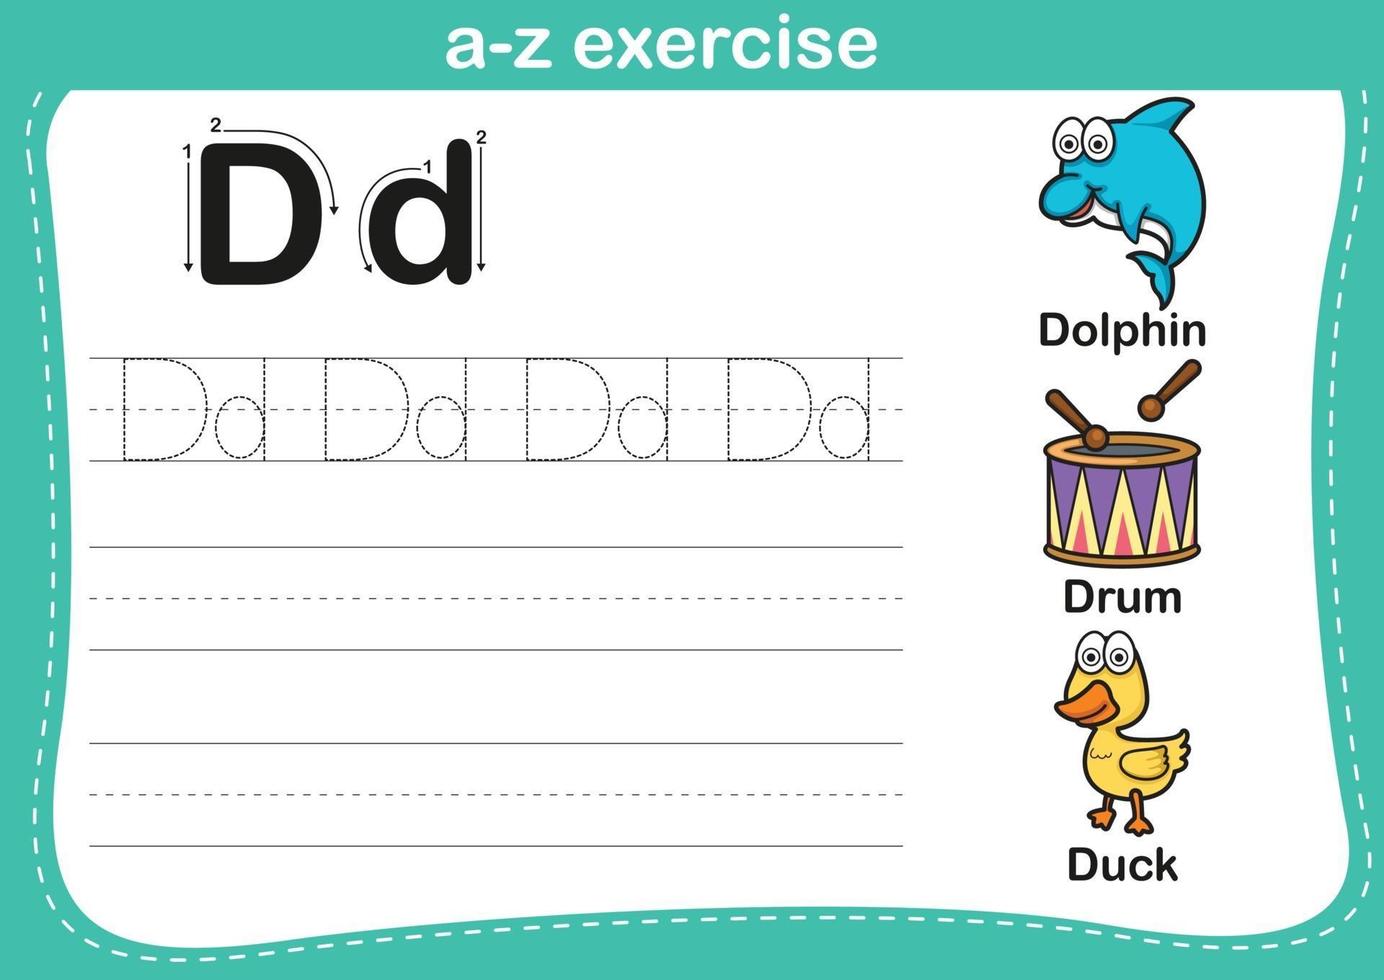 ejercicio del alfabeto az con ilustración de vocabulario de dibujos animados vector